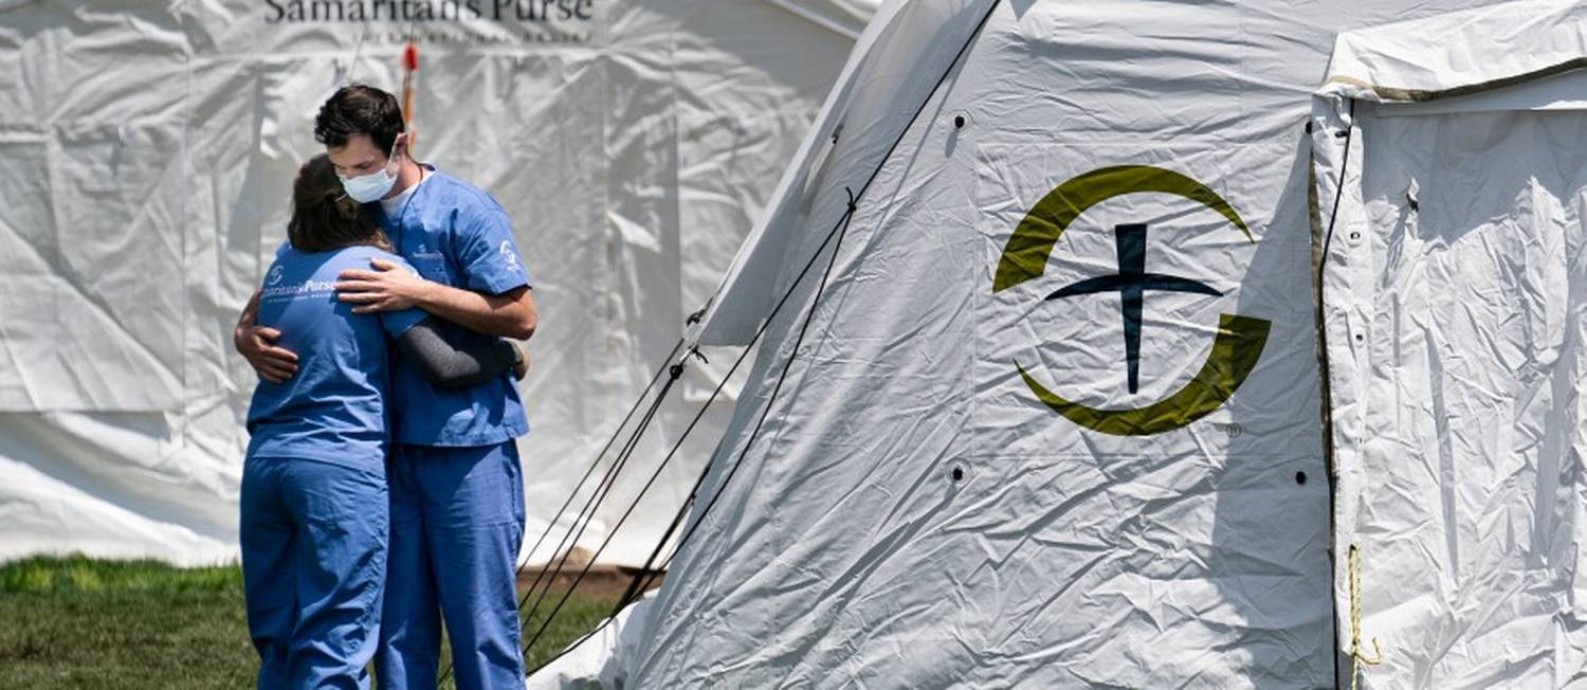 Dois enfermeiros se abraçam em frente a um hospital de campanha montado por um fundo samaritano em Nova York: estado foi um dos que mais sofreu durante a pandemia Foto: ERIN SCHAFF / Agência O Globo